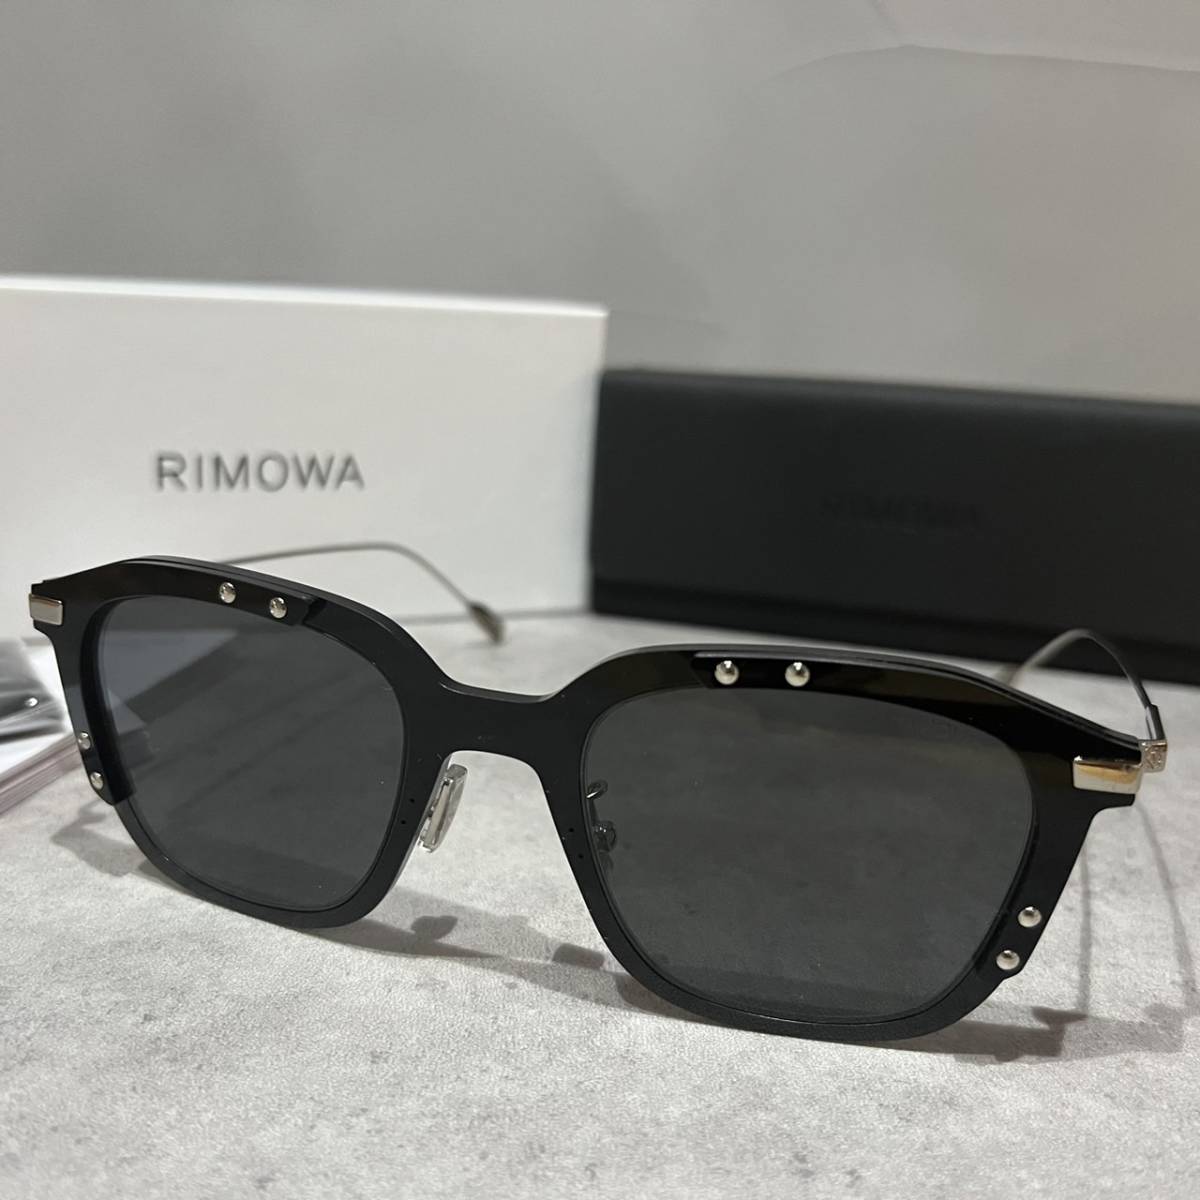 【送料無料】【正規品・新品】RIMOWA リモア RW40010U RW 40010 U 01A フルリム ウェリントン ボストン イタリア製 サングラス メガネ